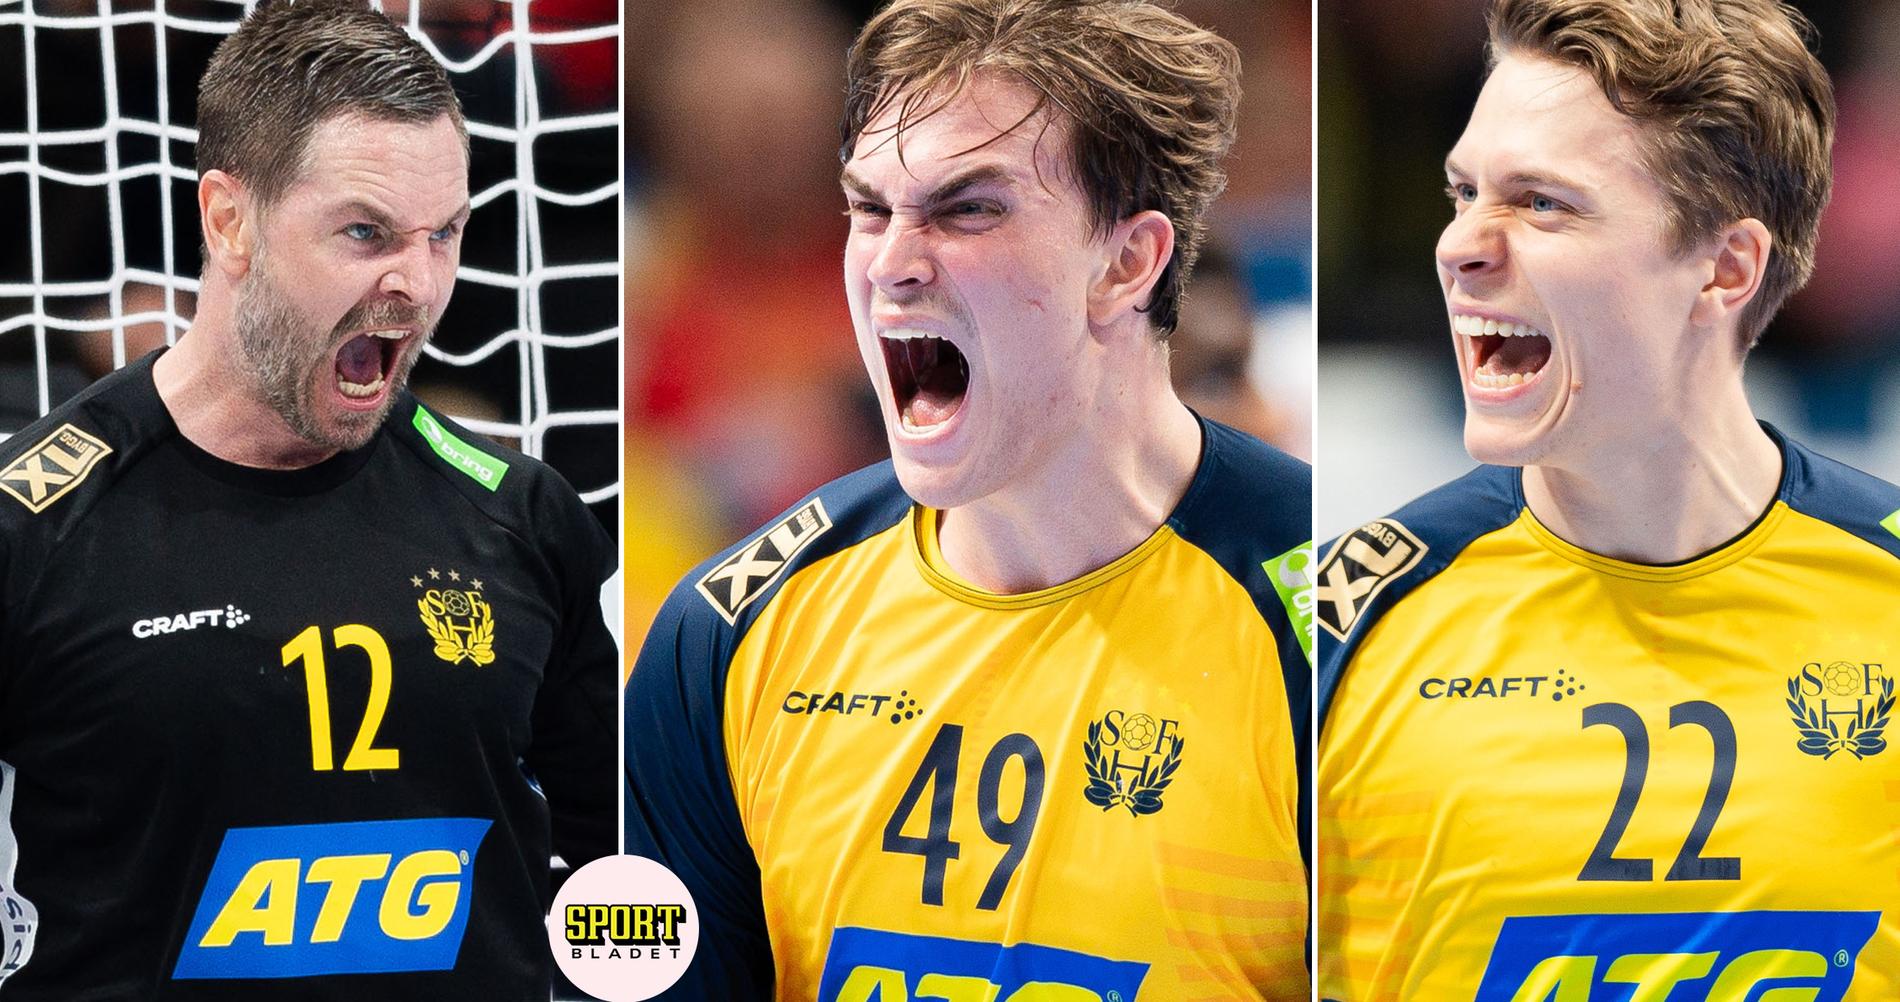 Handbolls-EM: Sverige till final – seger mot Frankrike